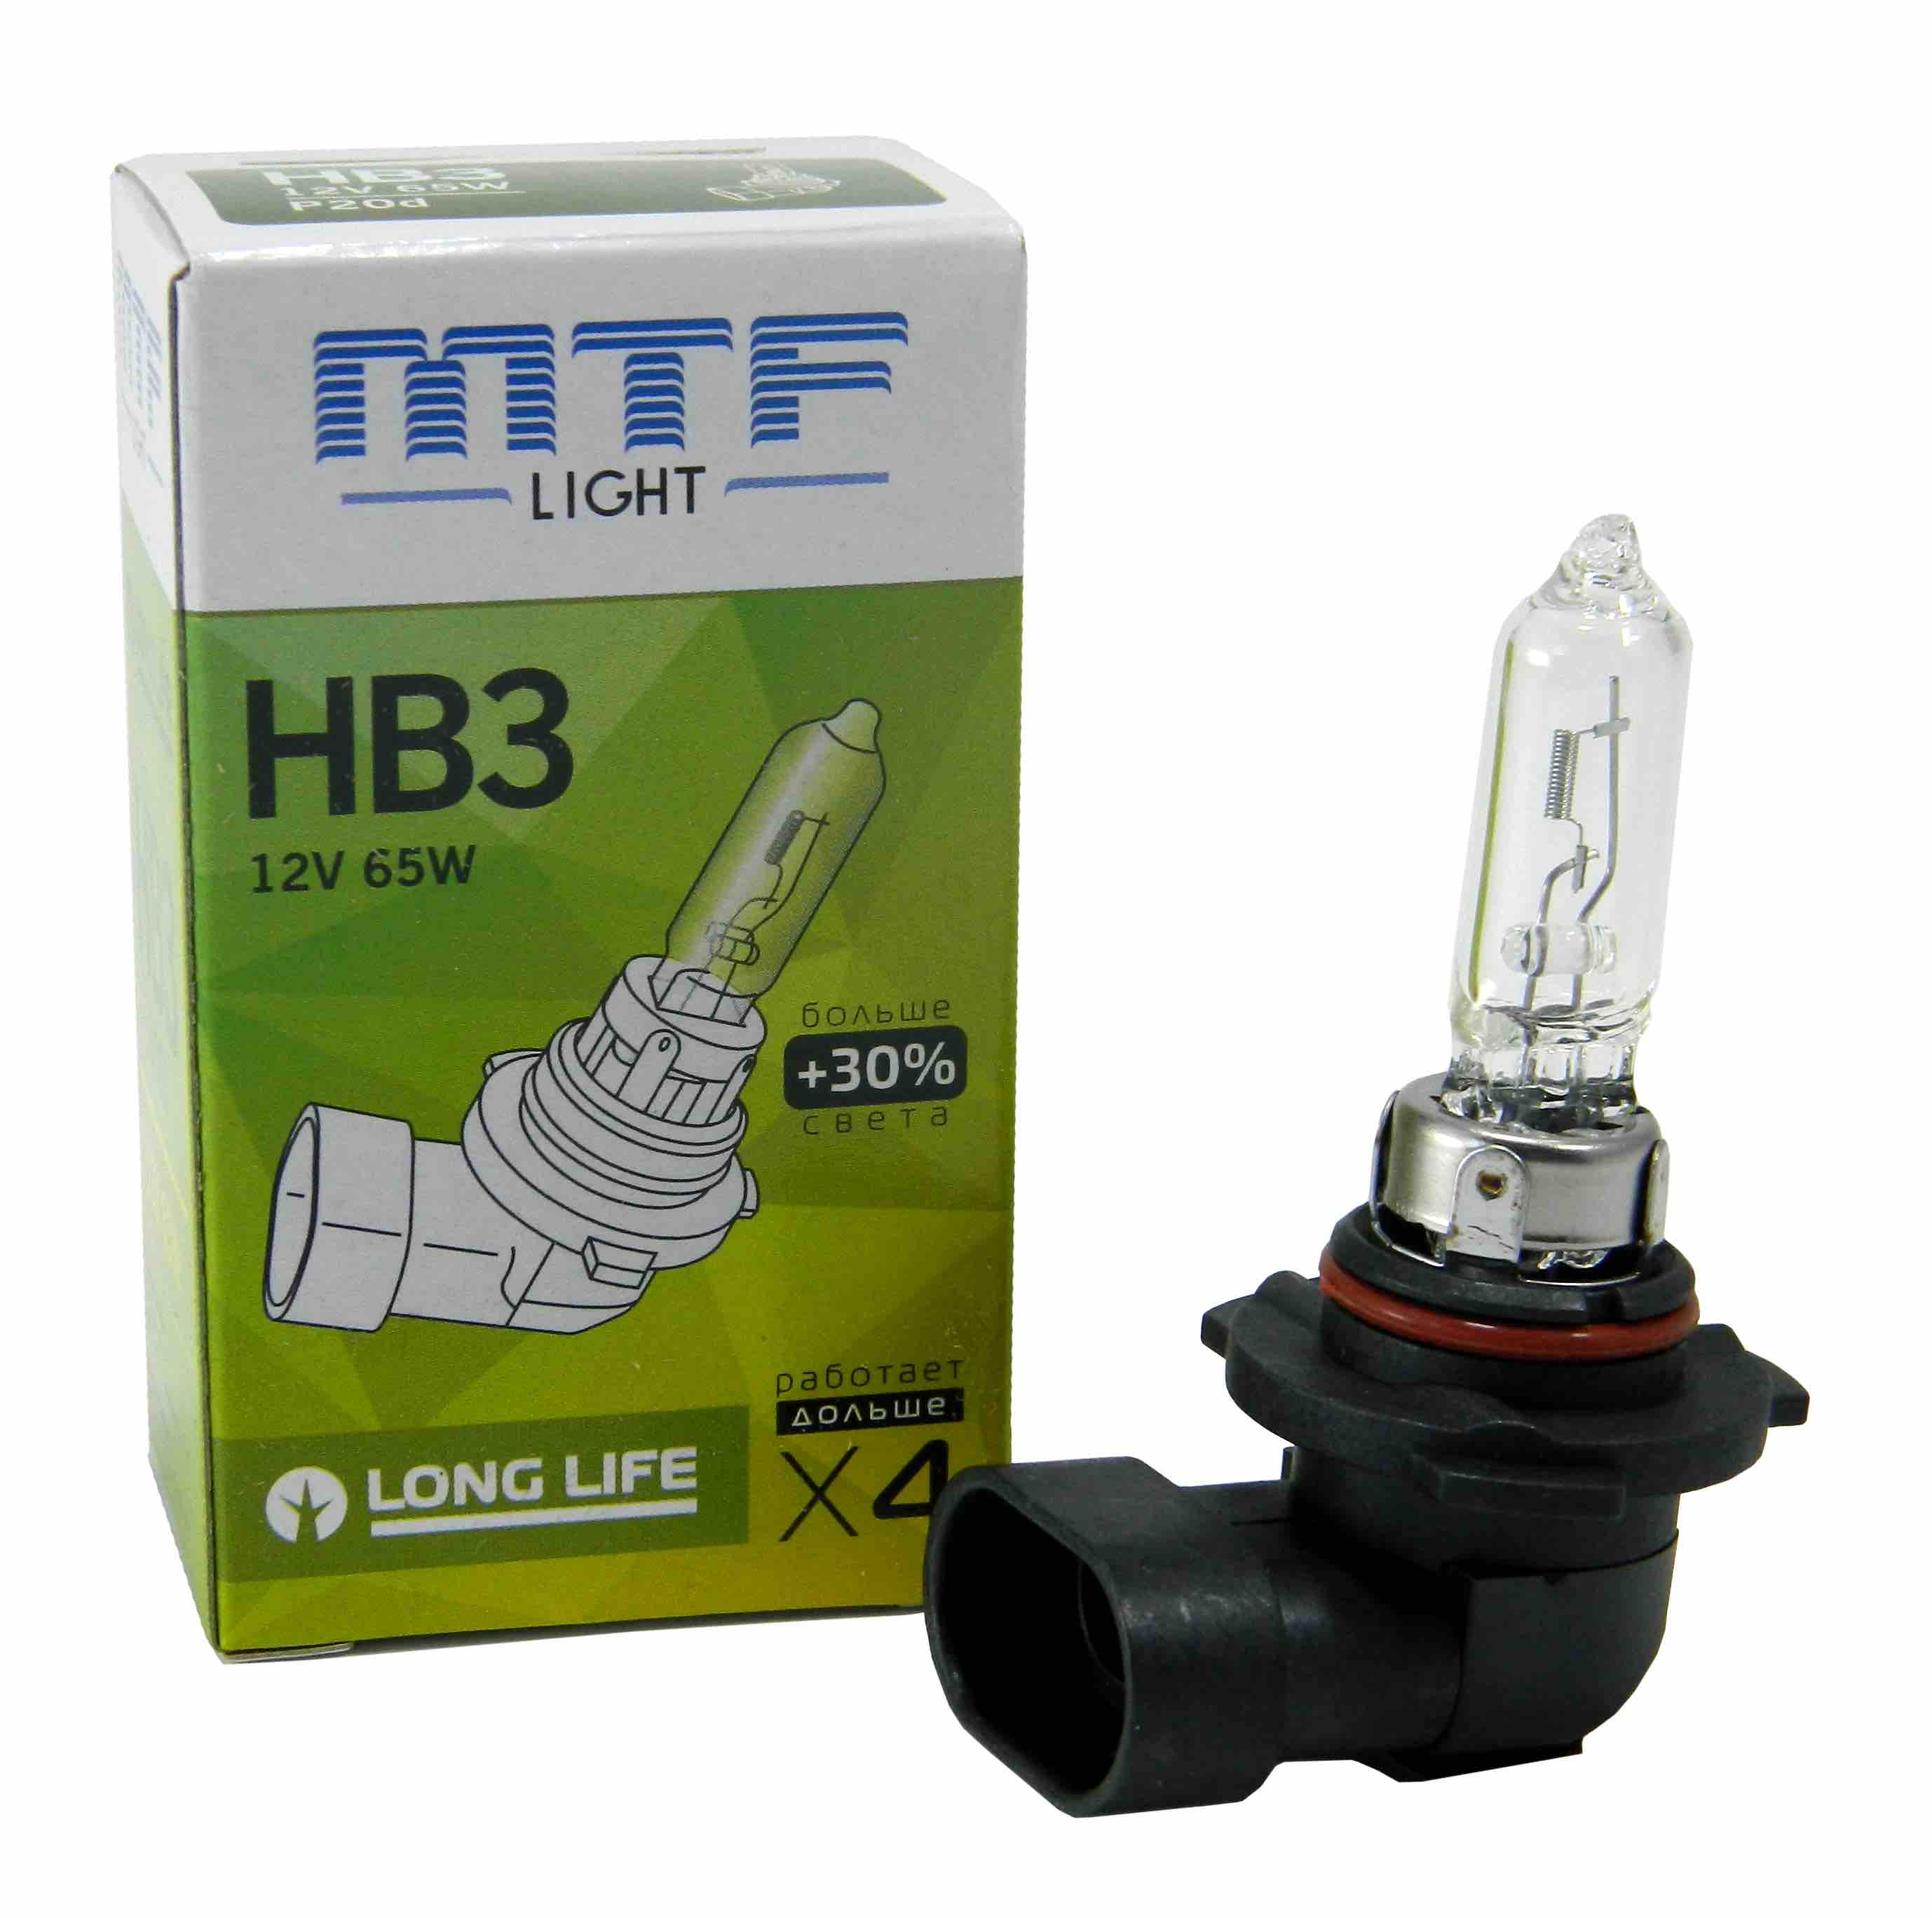 Ближний свет hb3. Лампы MTF hb3. Hb3 лампа галогенная. Лампы hb3 галоген. Лампа н27w/2 MTF Longlife.